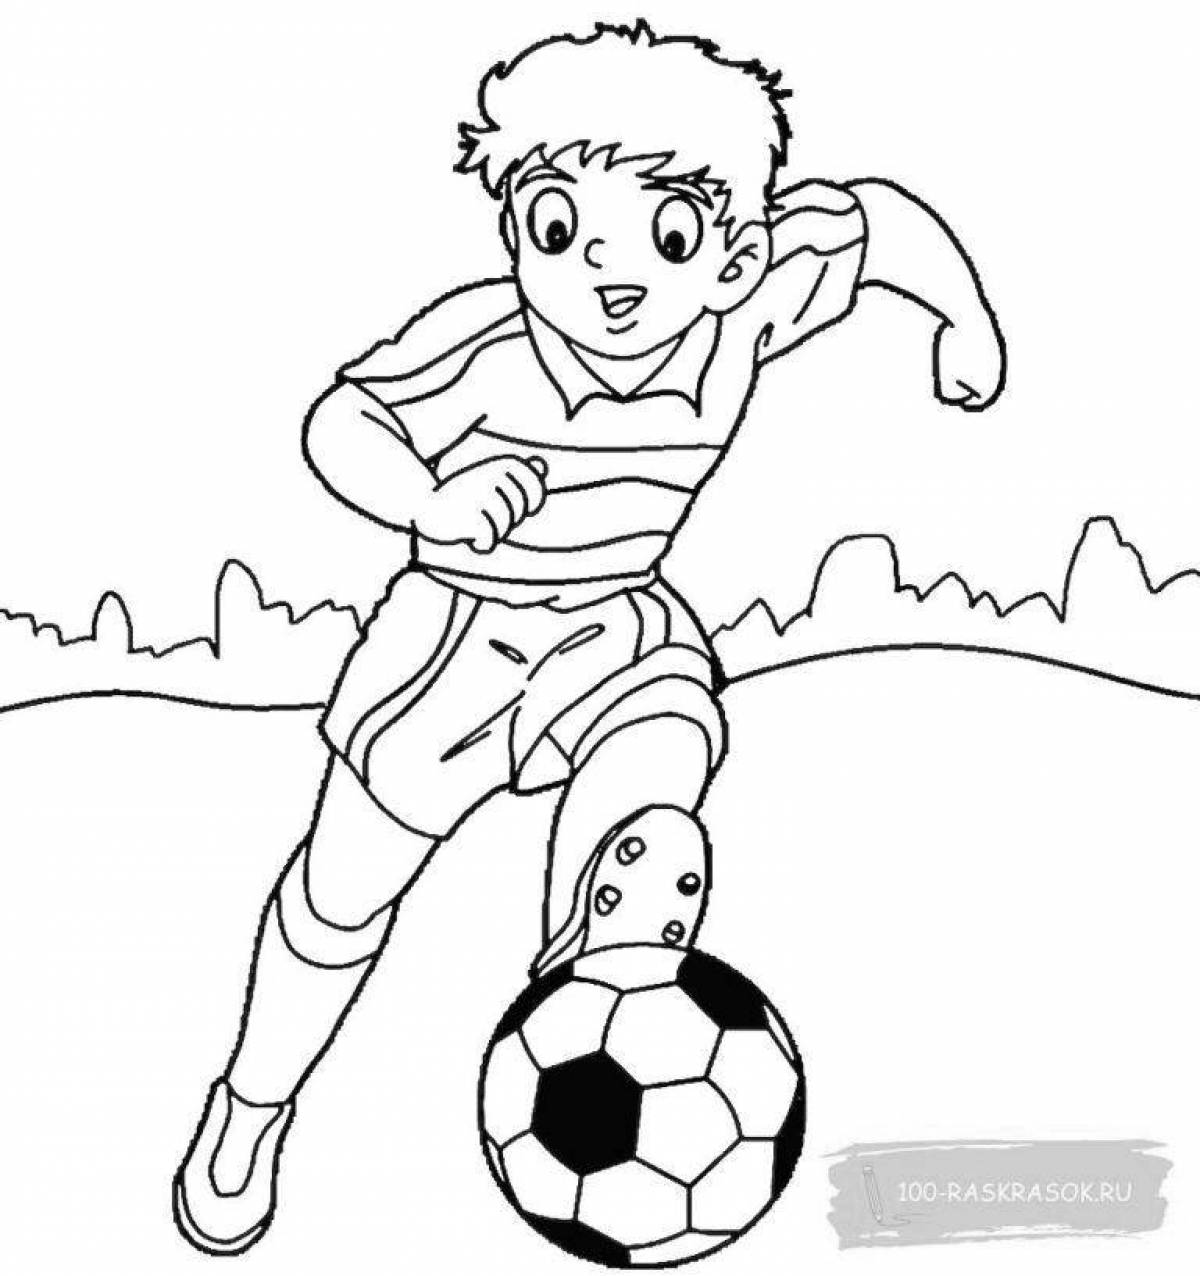 Живой футболист раскраски для детей